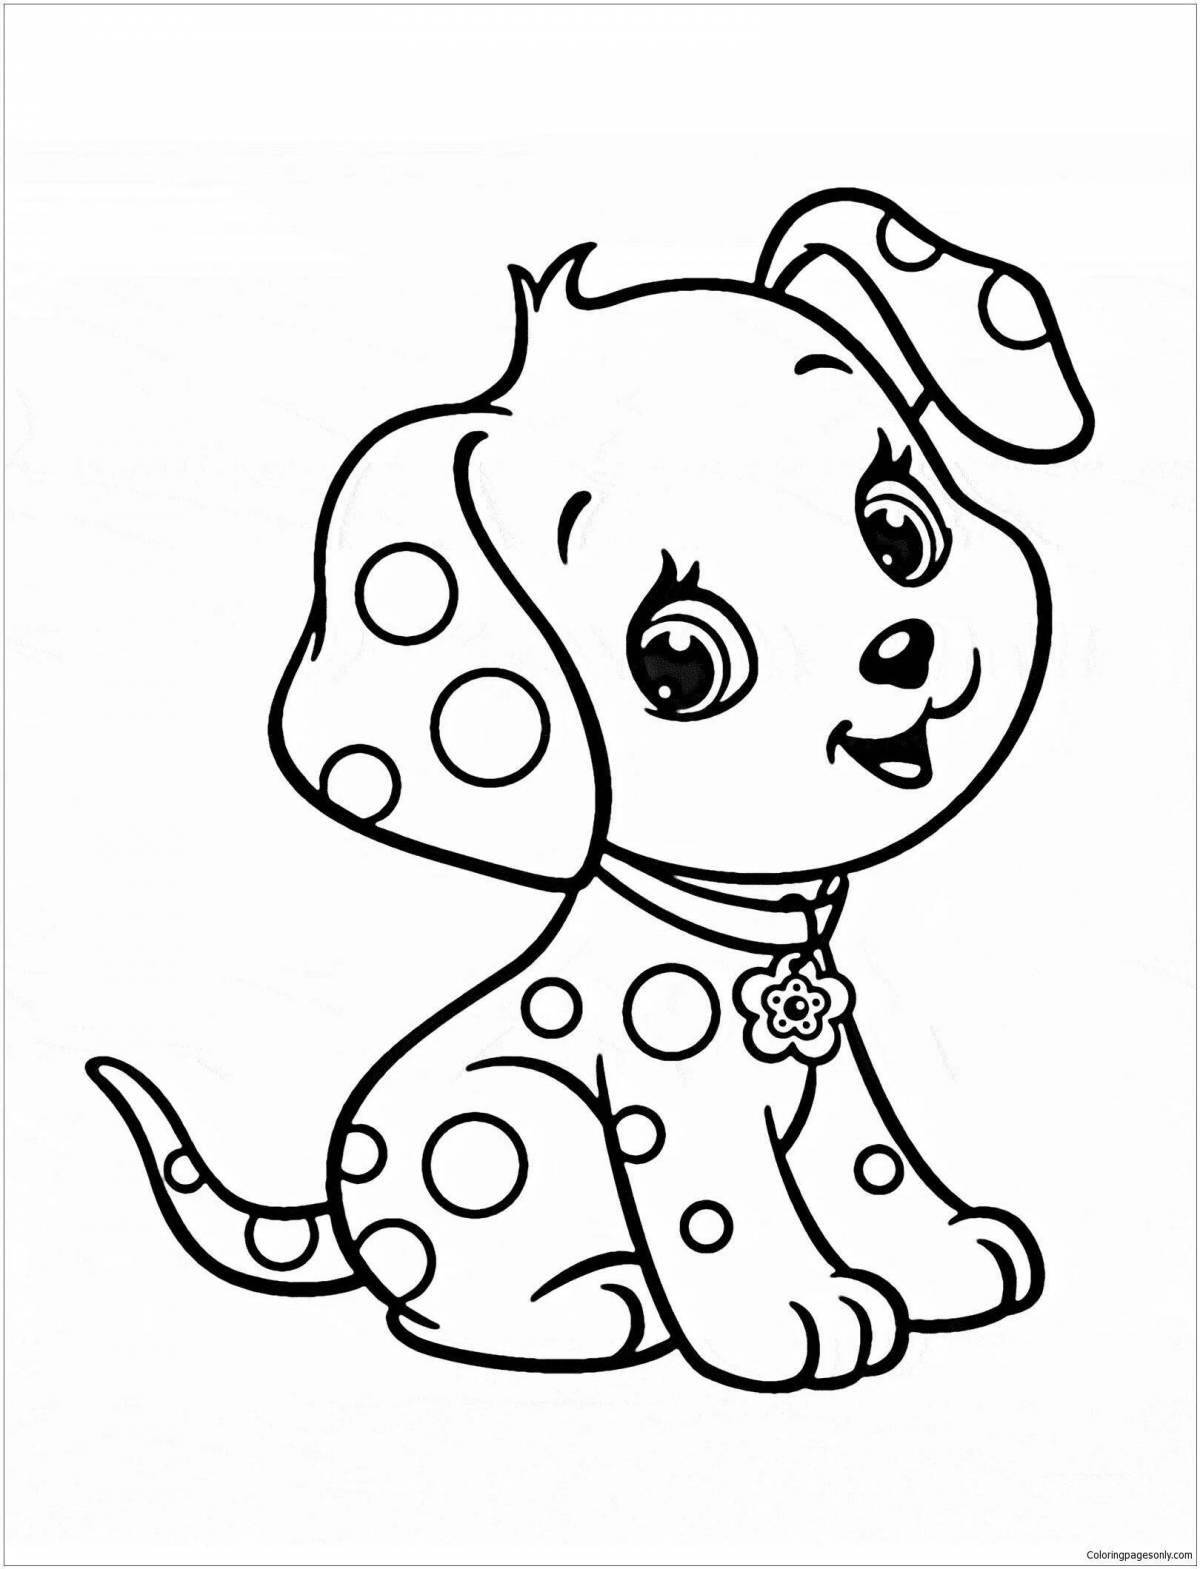 Яркая раскраска собака для детей 7-8 лет